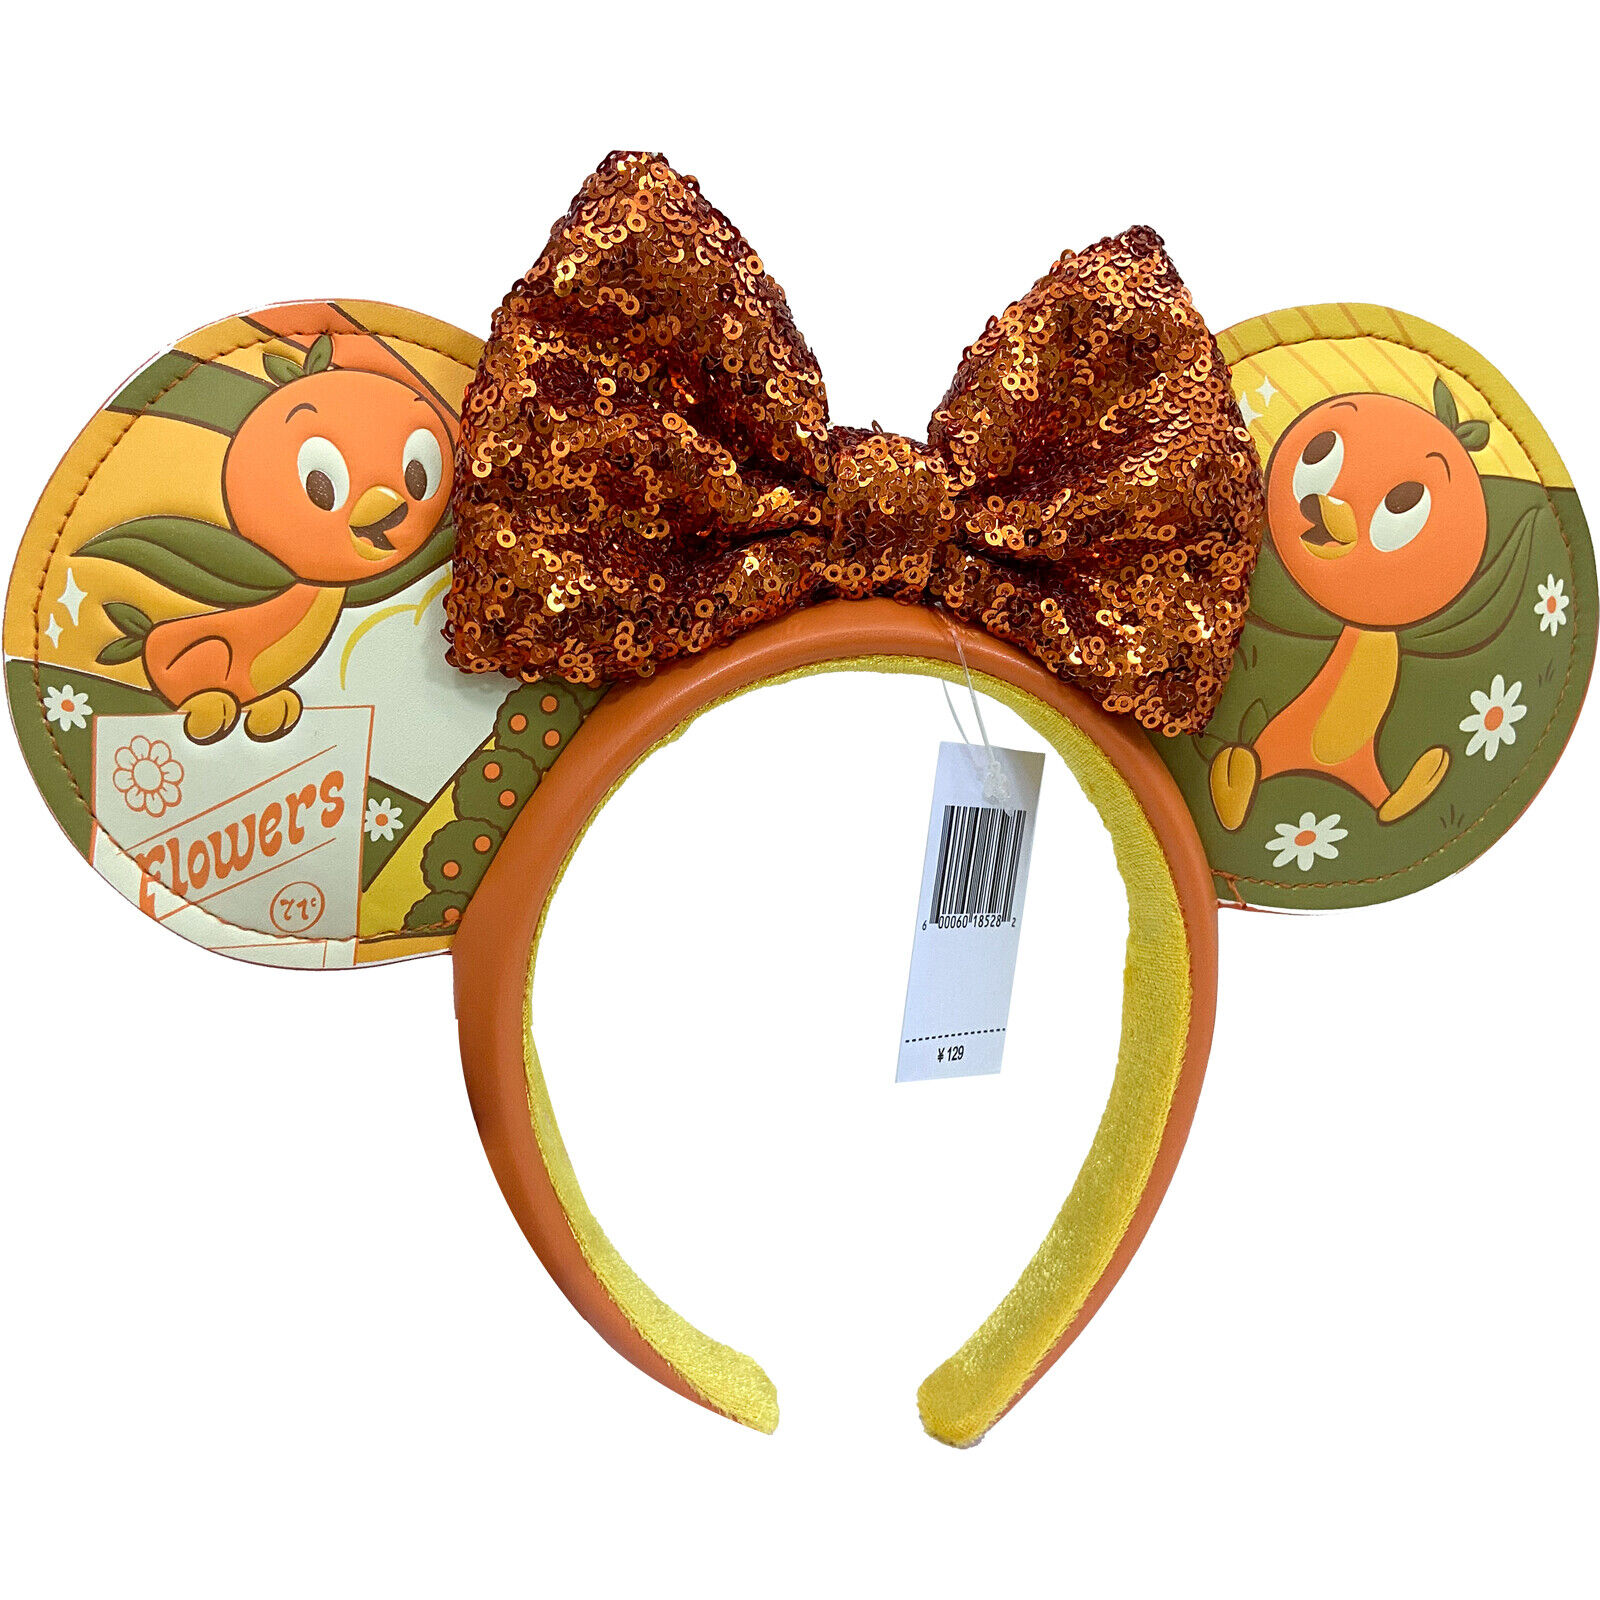 DisneyParks Flower&Garden Minnie Mouse Sequin Bow Orange Bird Ears Headband Ears